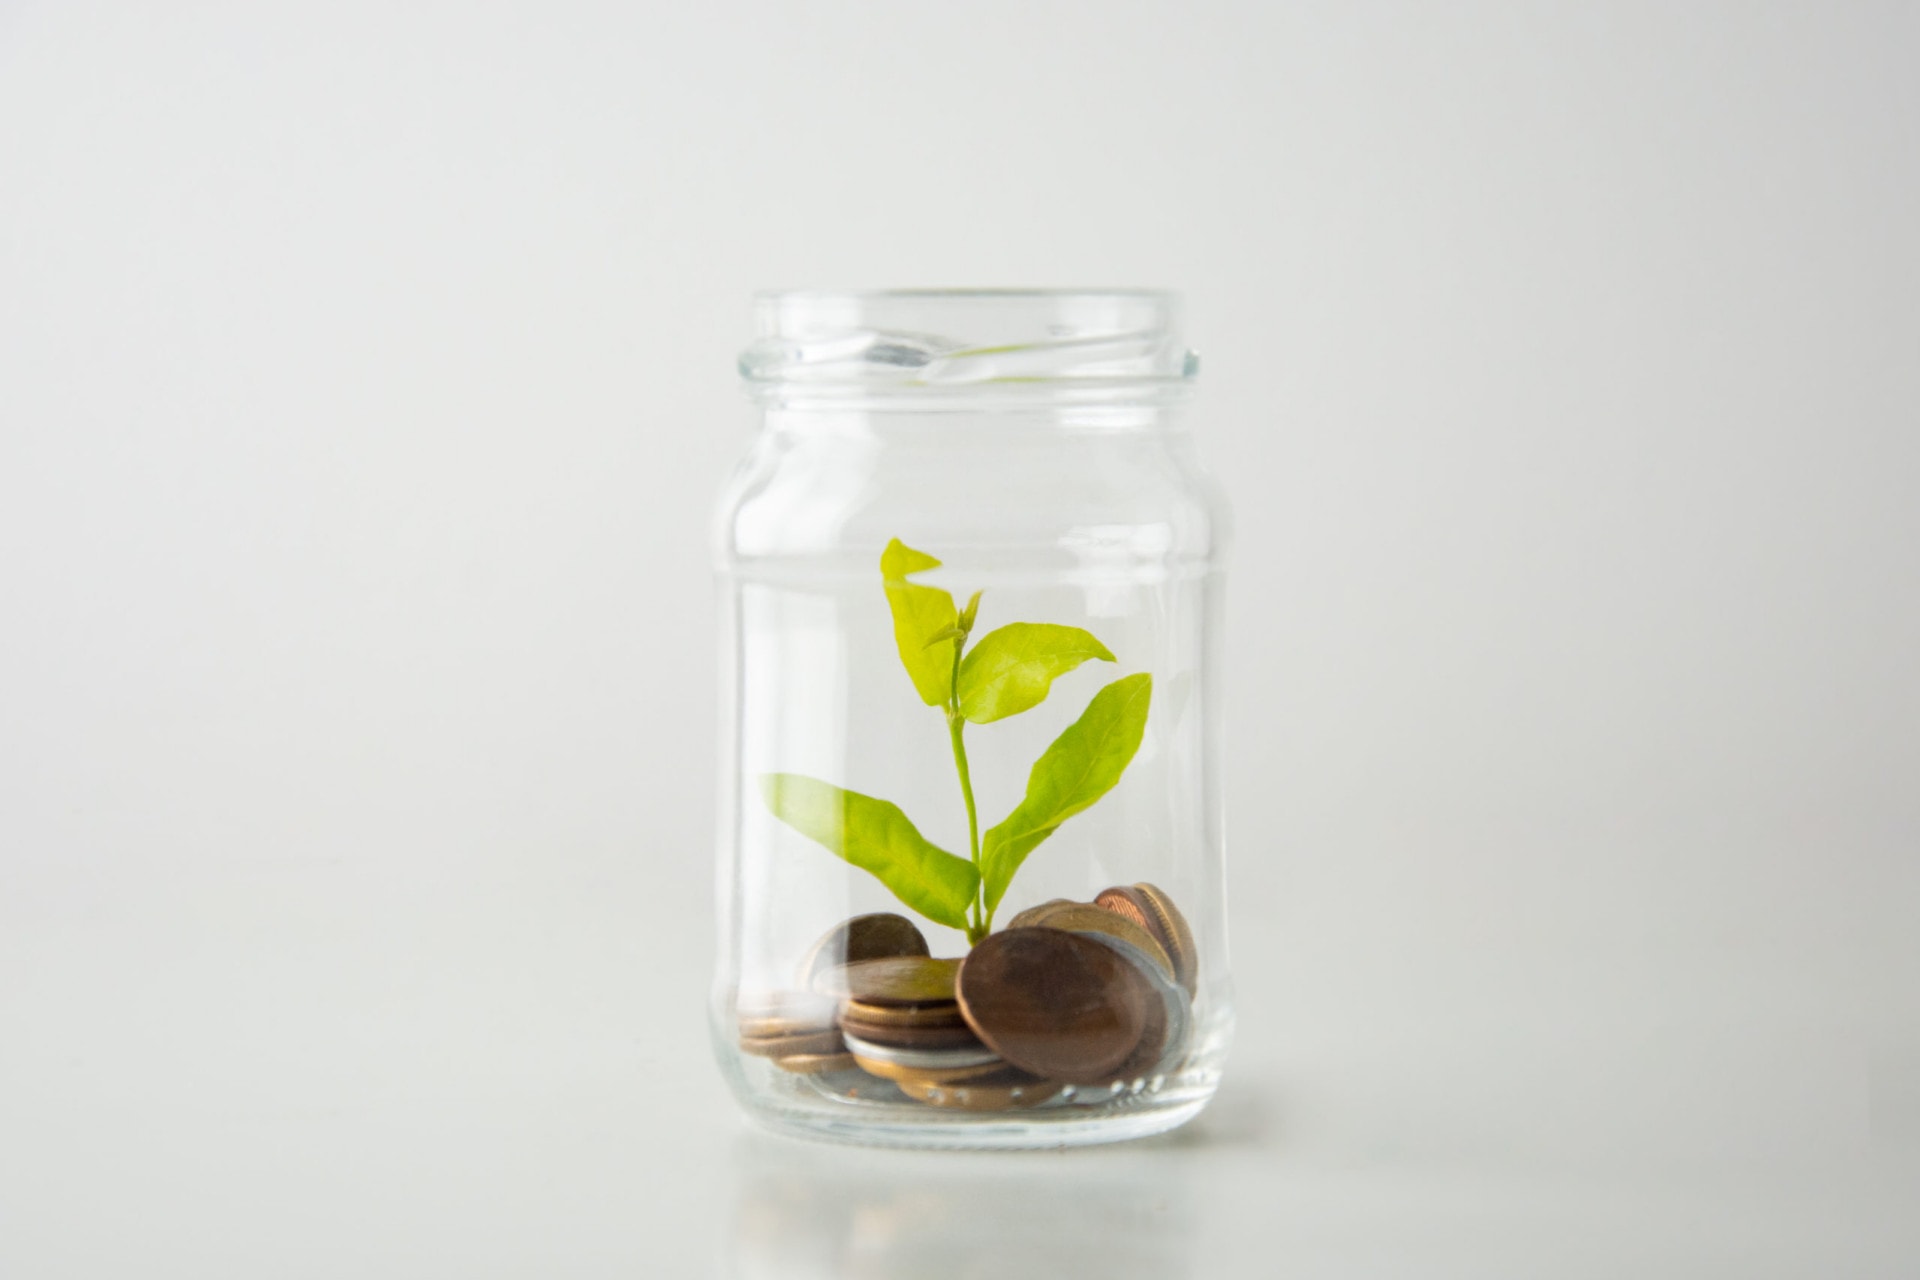 jarro com moedas e planta representam a lucratividade da economia circular